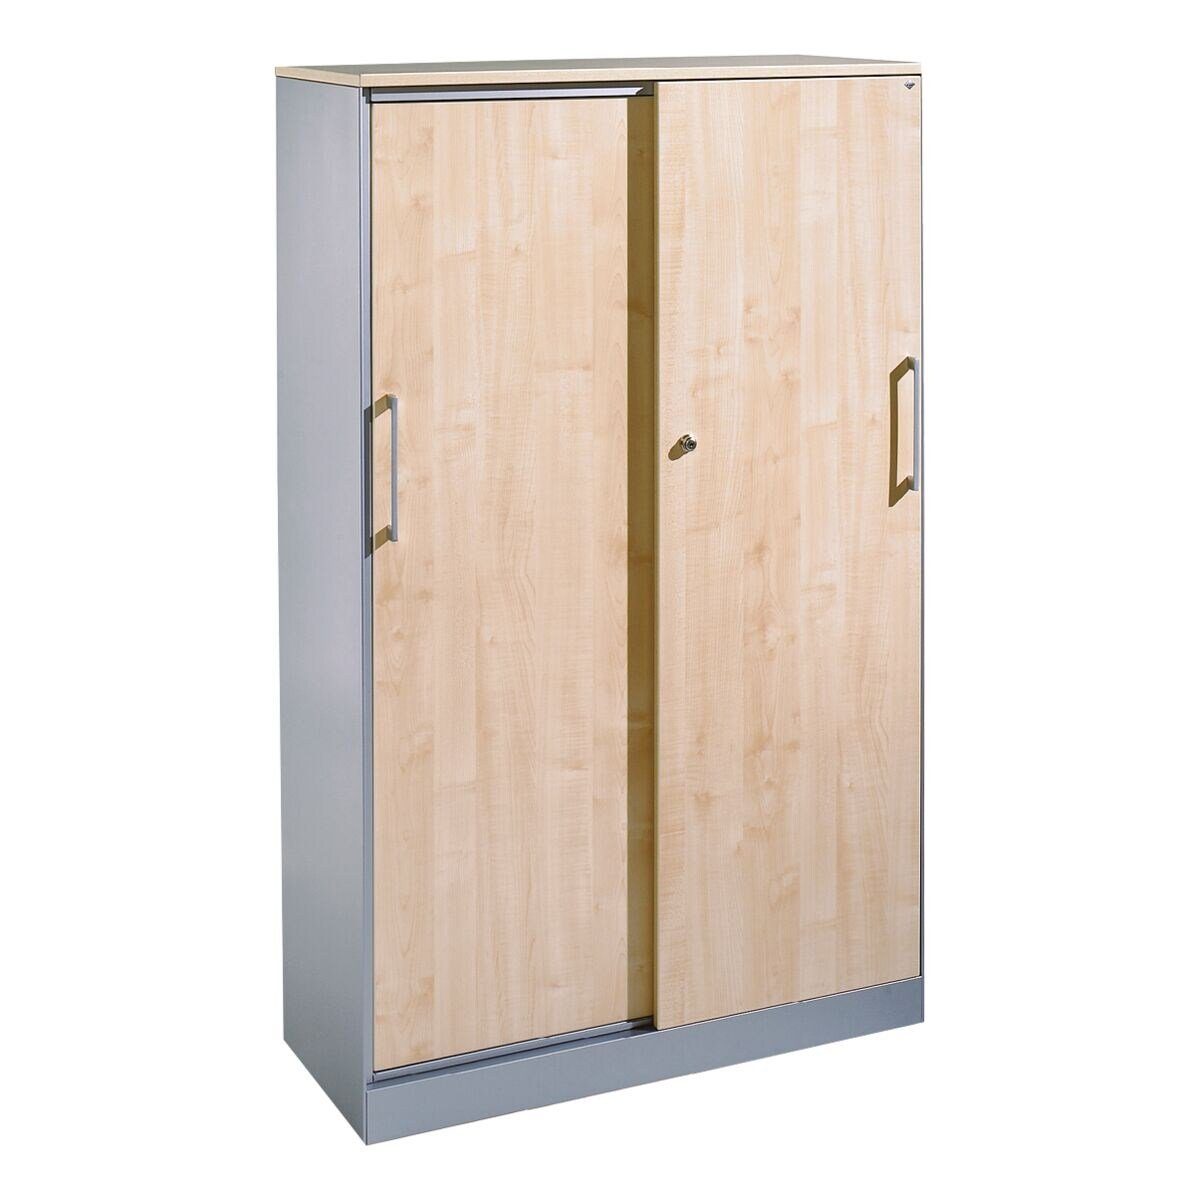 Holzdekor-Türen mit OH, CP Asisto 4 ahorn Schiebetürenschrank